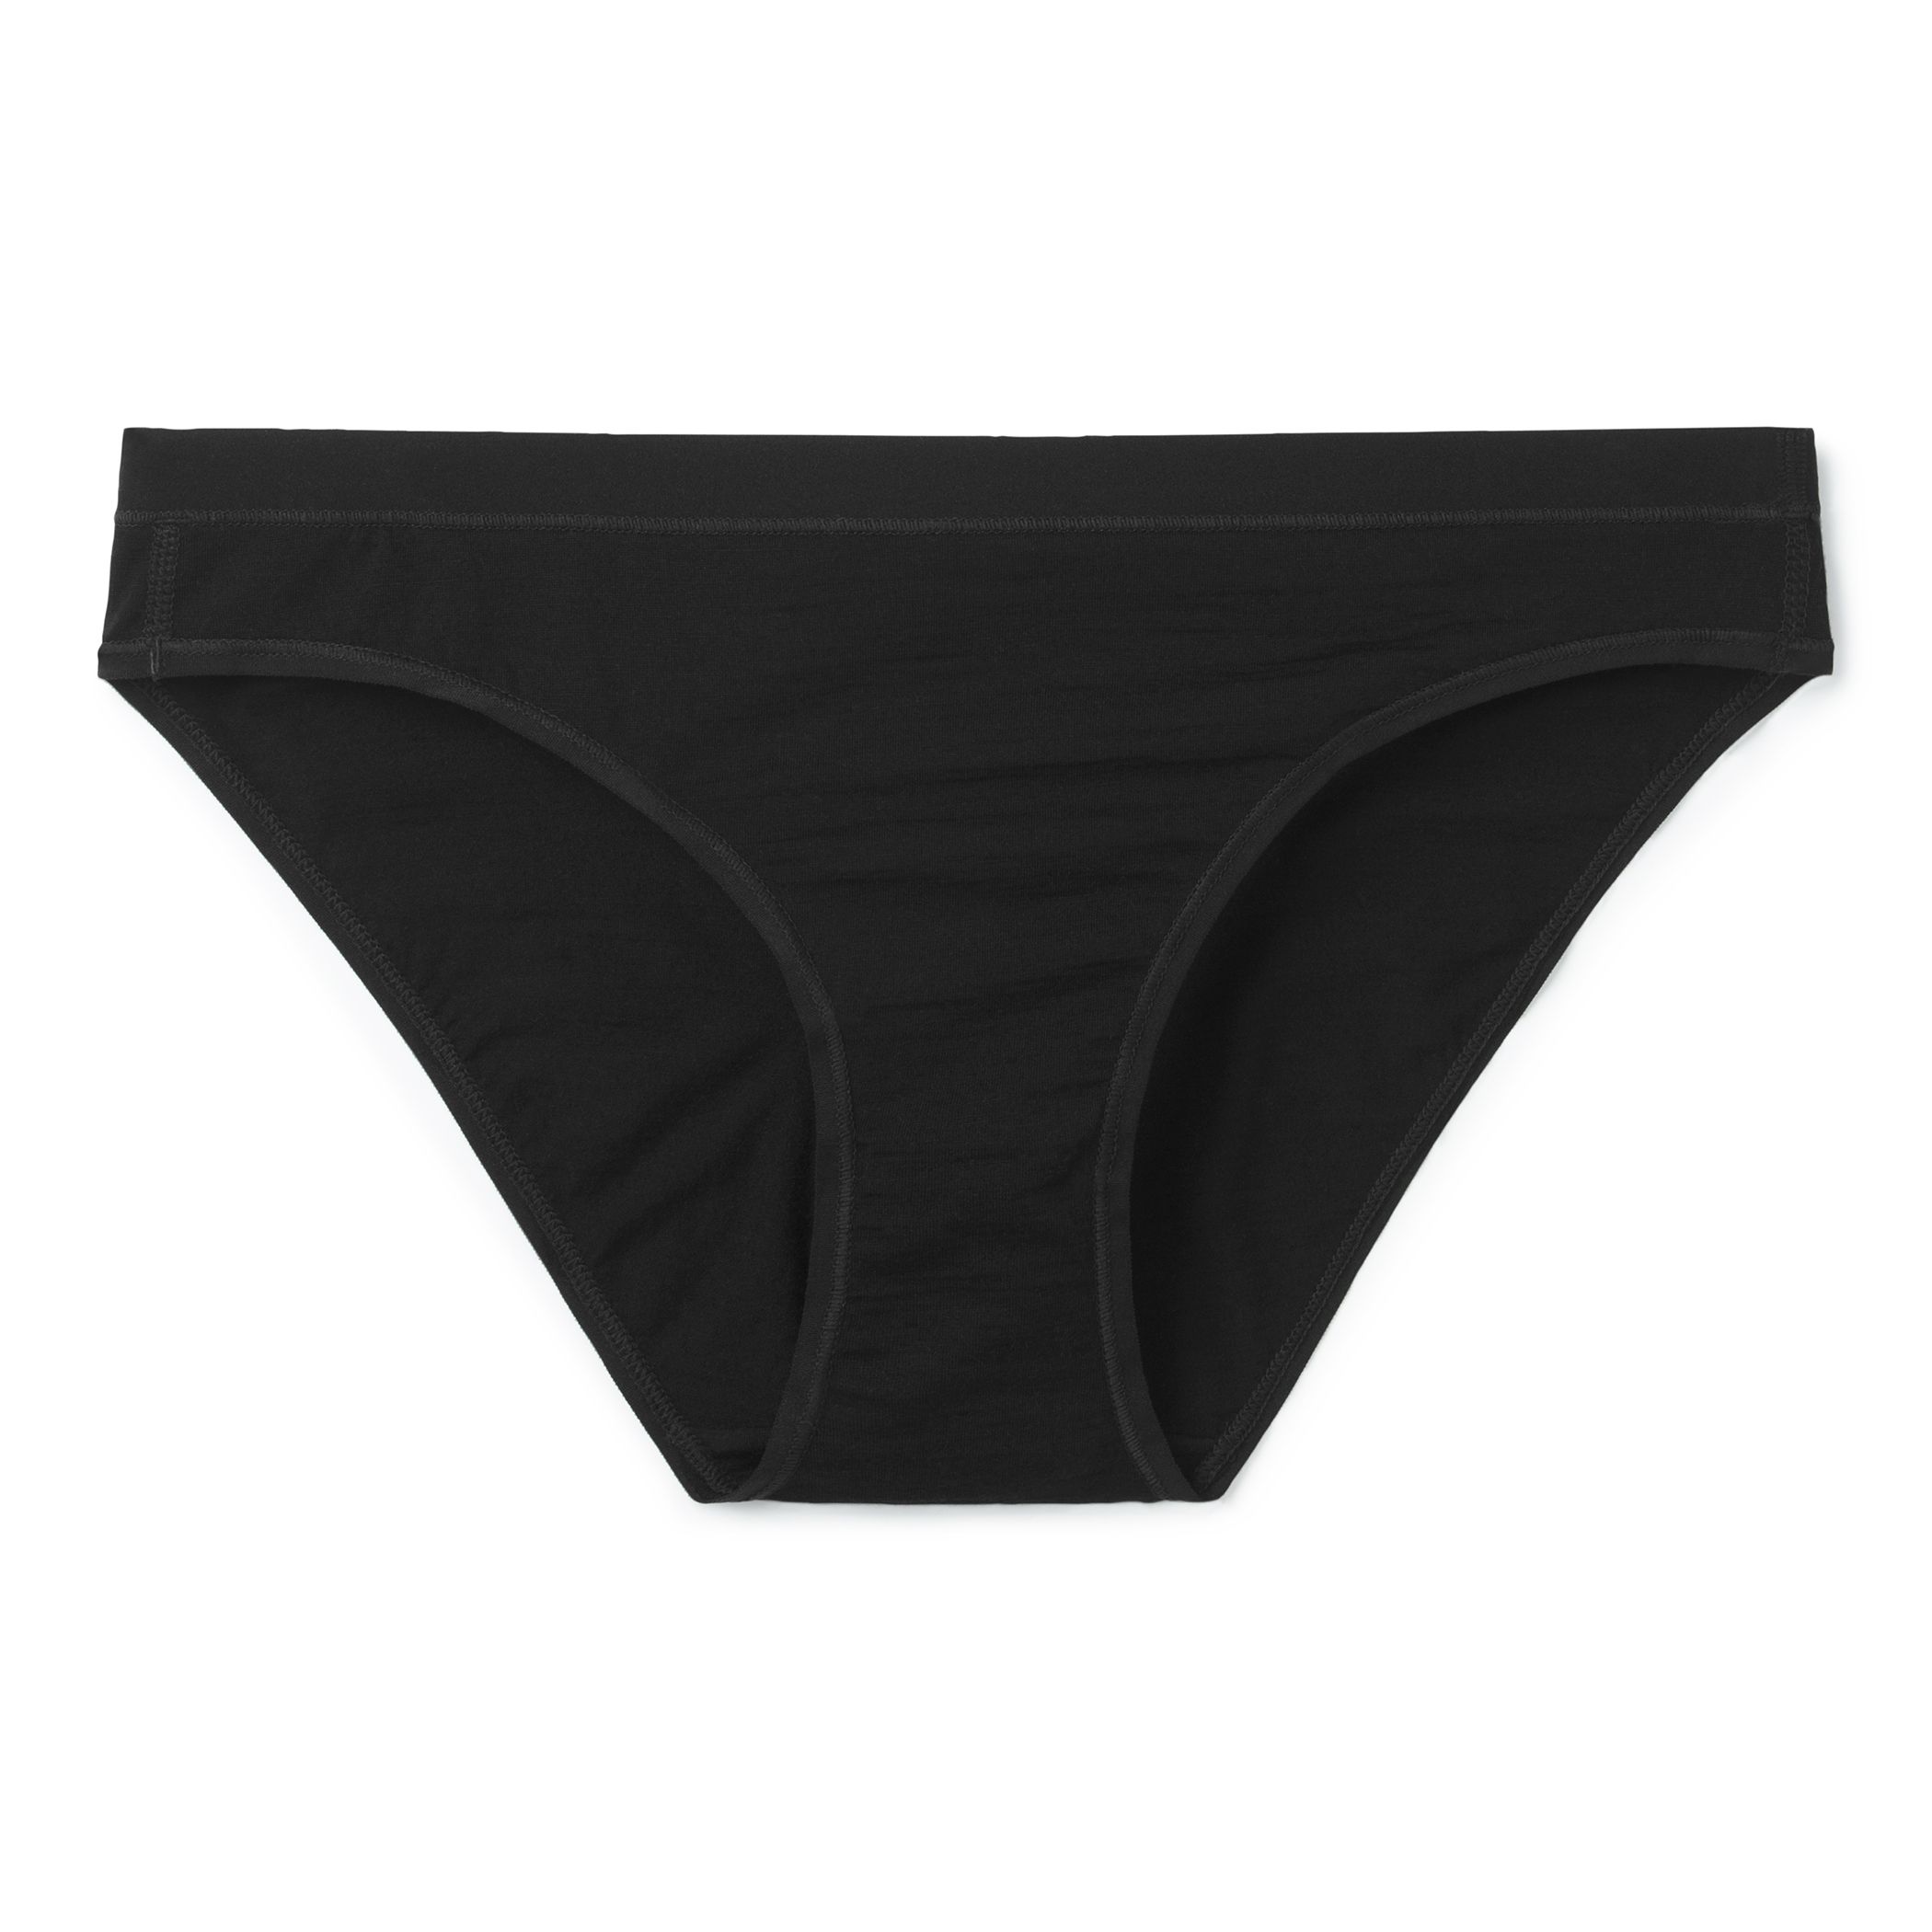 Woolworths Essentials Underwear Women's Bikini Size 12-14 Each